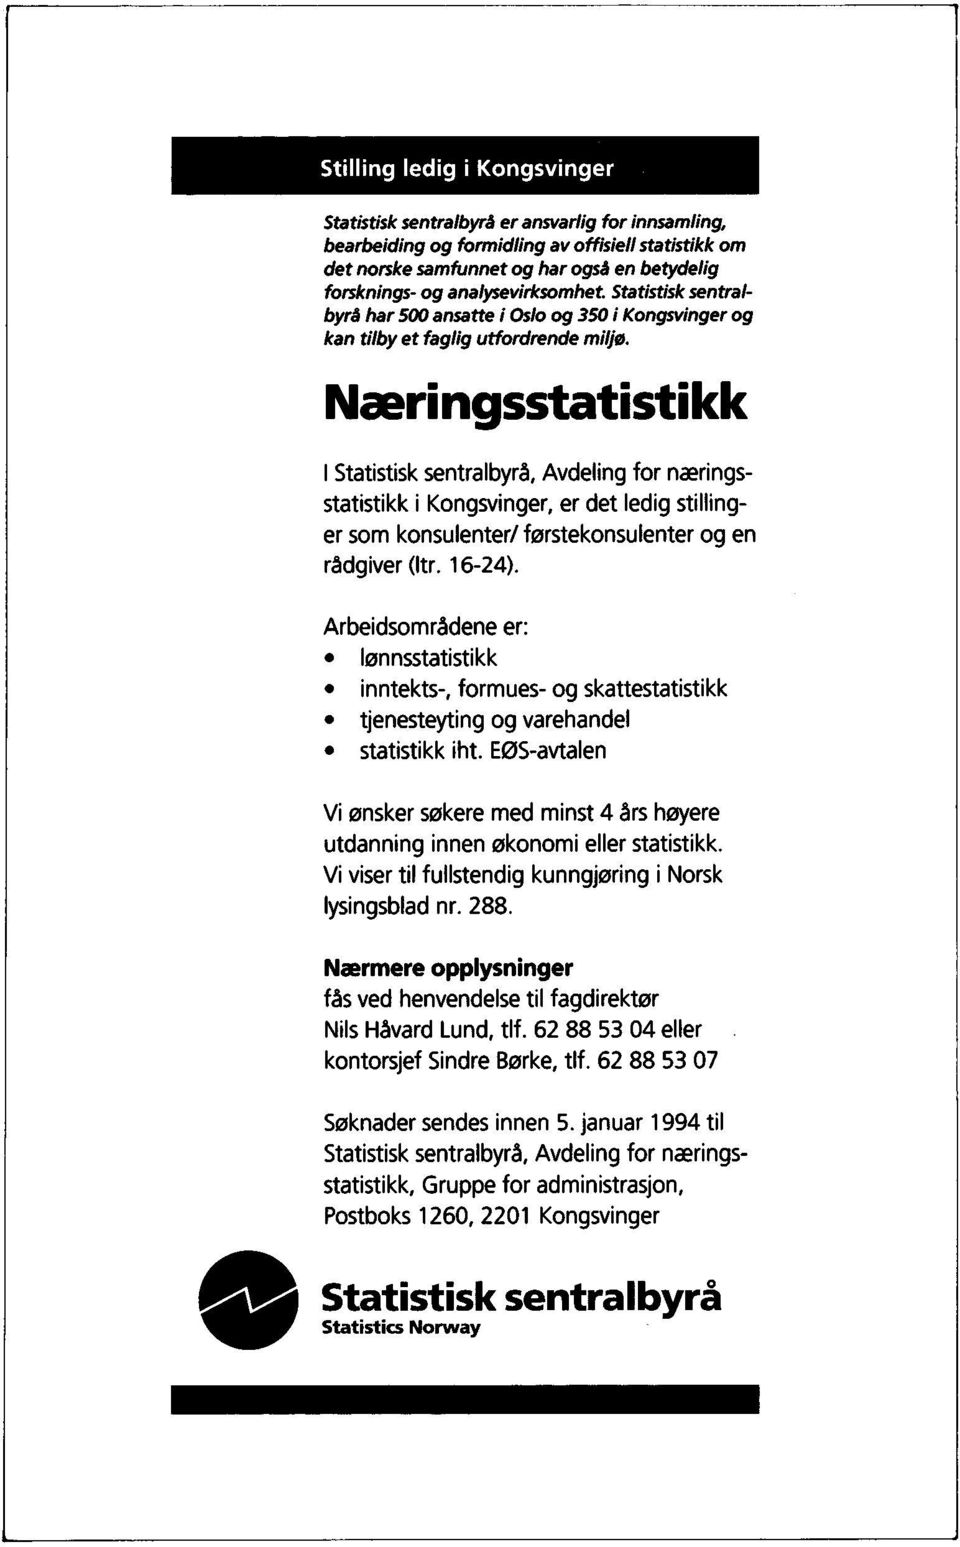 Næringsstatistikk I Statistisk sentralbyrå, Avdeling for næringsstatistikk i Kongsvinger, er det ledig stillinger som konsulenter/ førstekonsulenter og en rådgiver (ltr. 16-24).